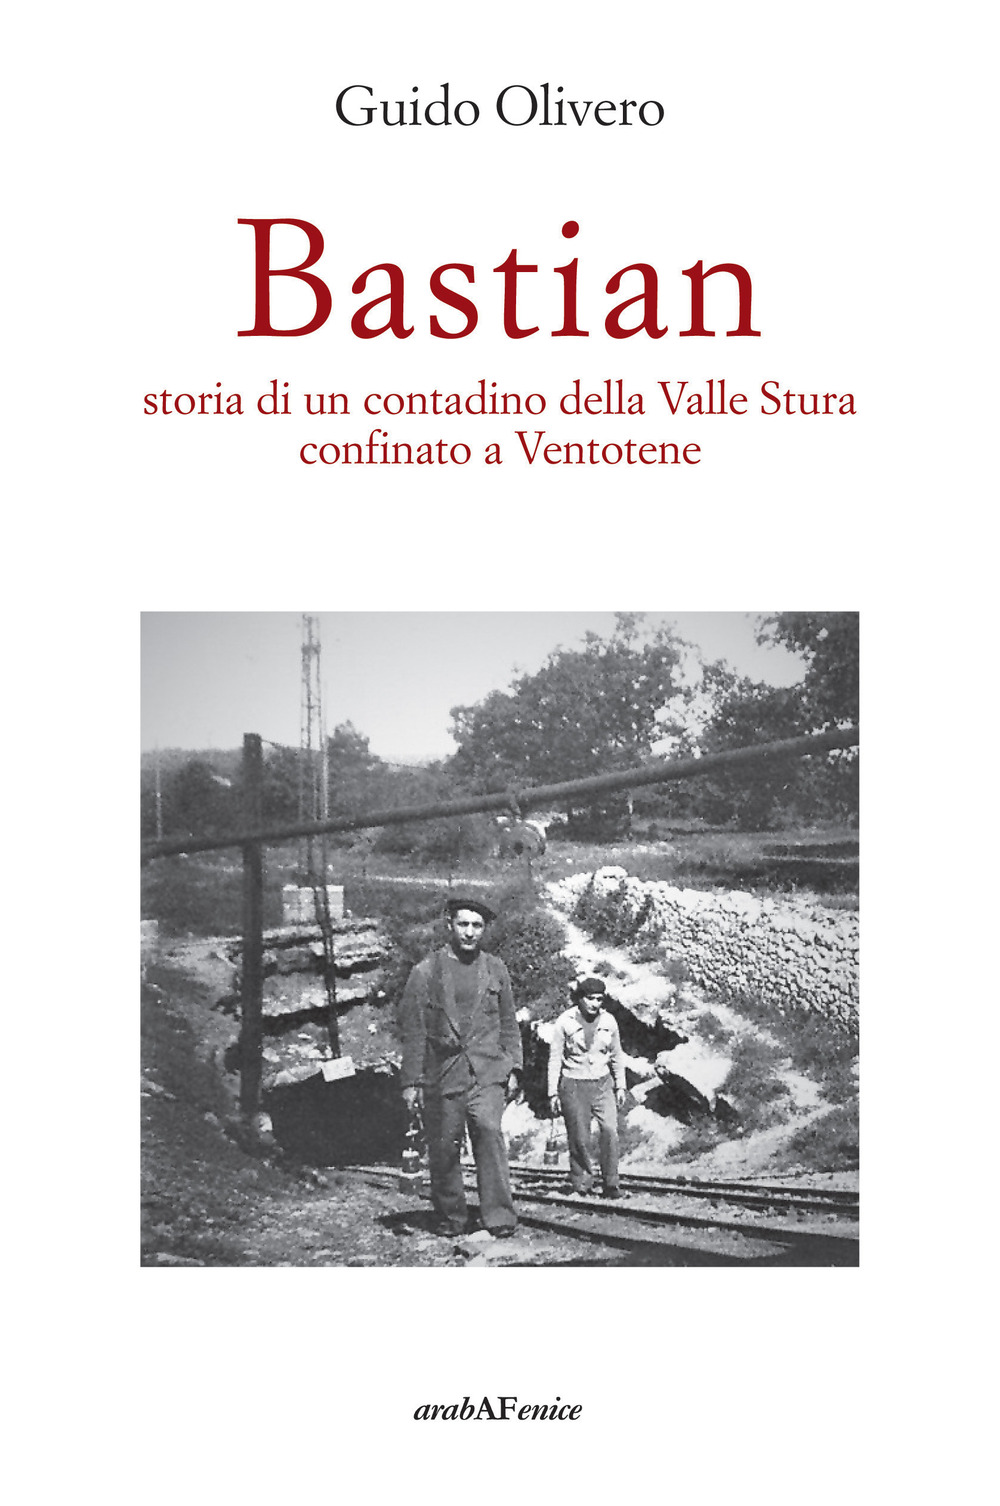 Bastian, storia di un contadino della valle Stura confinato a Ventotene